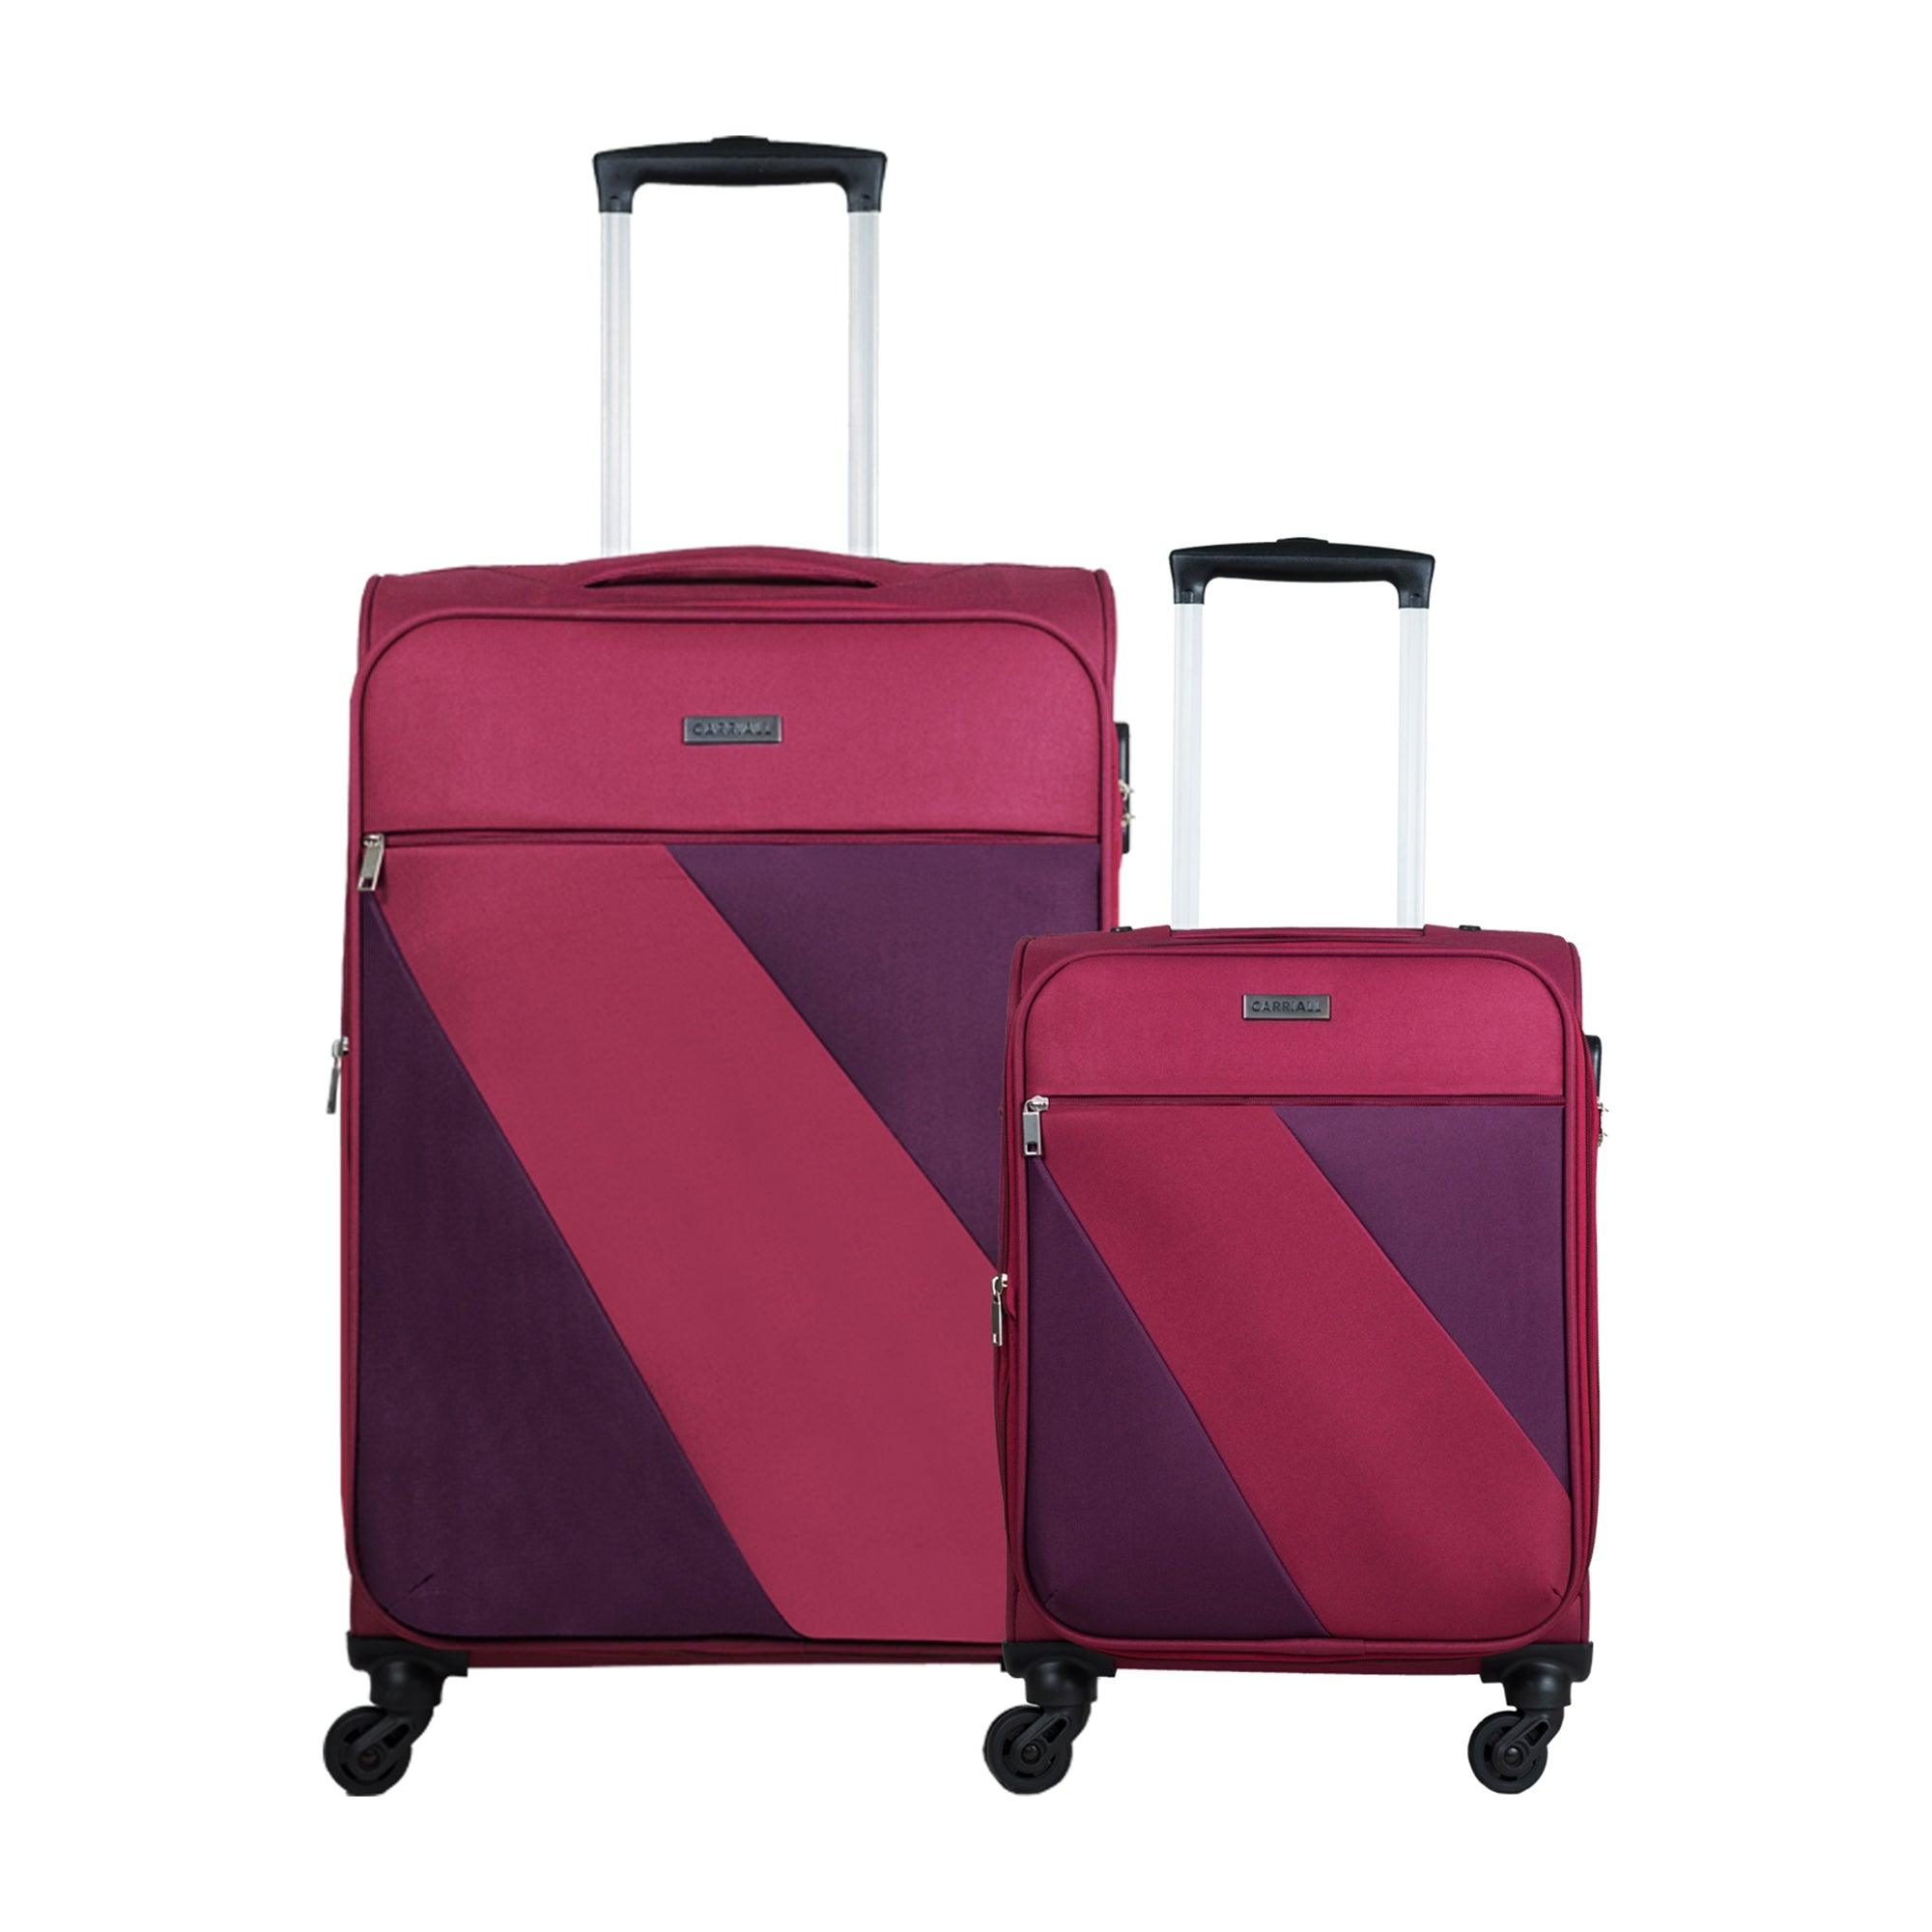 Ace Luggage Set of 2